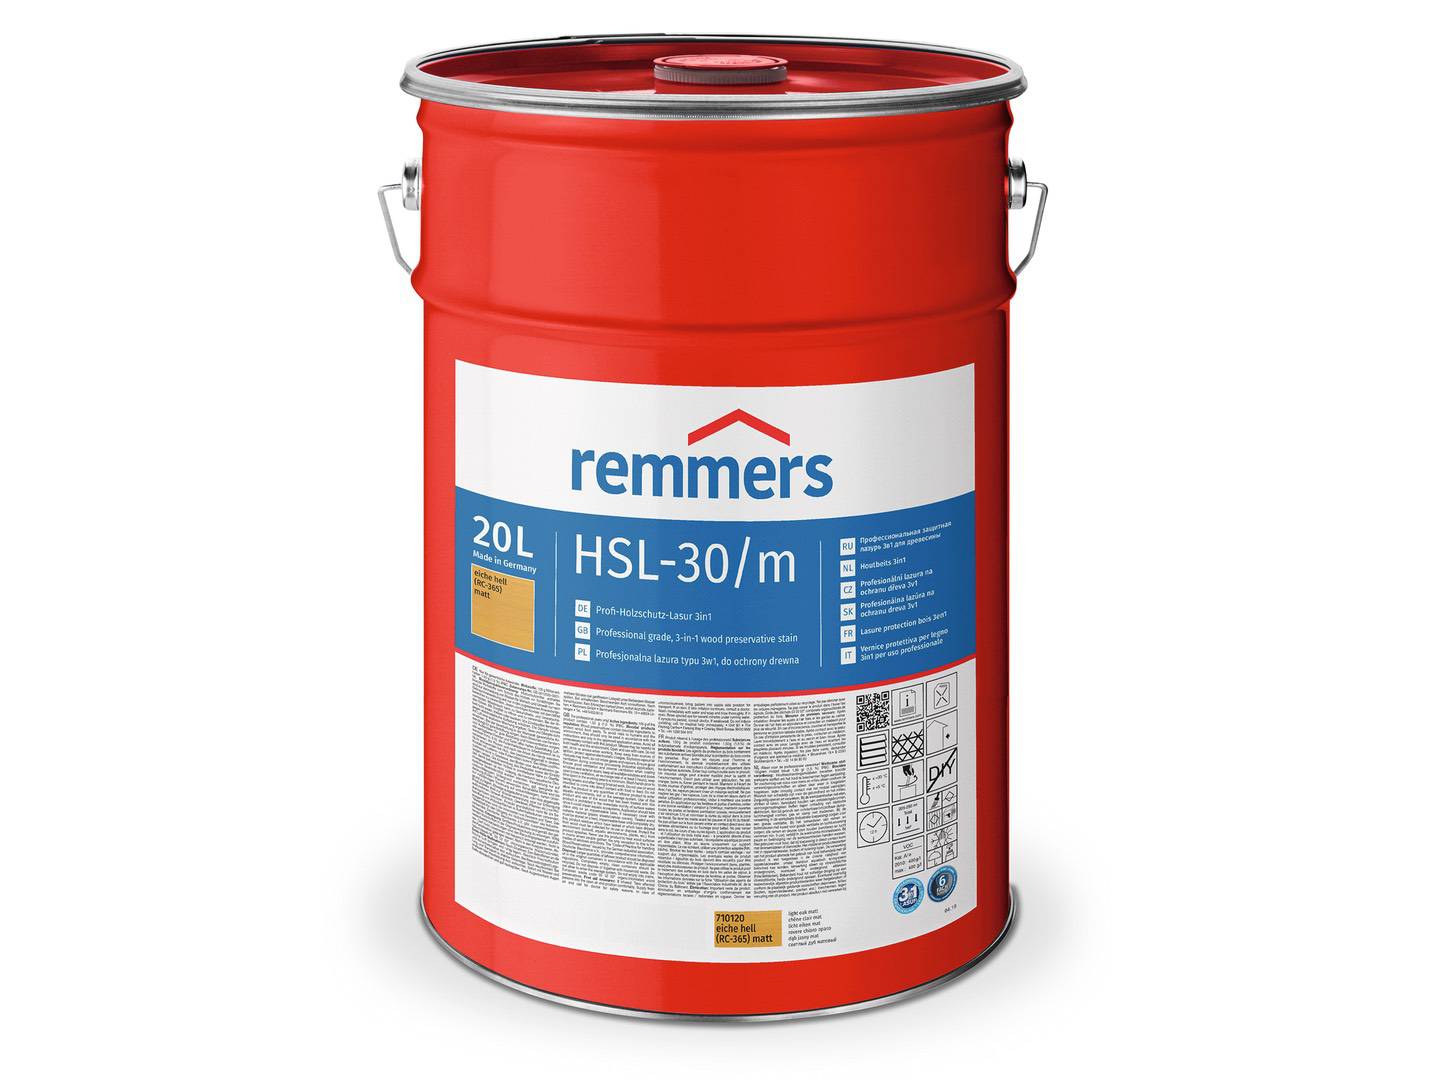 REMMERS HSL-30/m-Profi-Holzschutz-Lasur 3in1 nussbaum (RC-660) matt 20 l